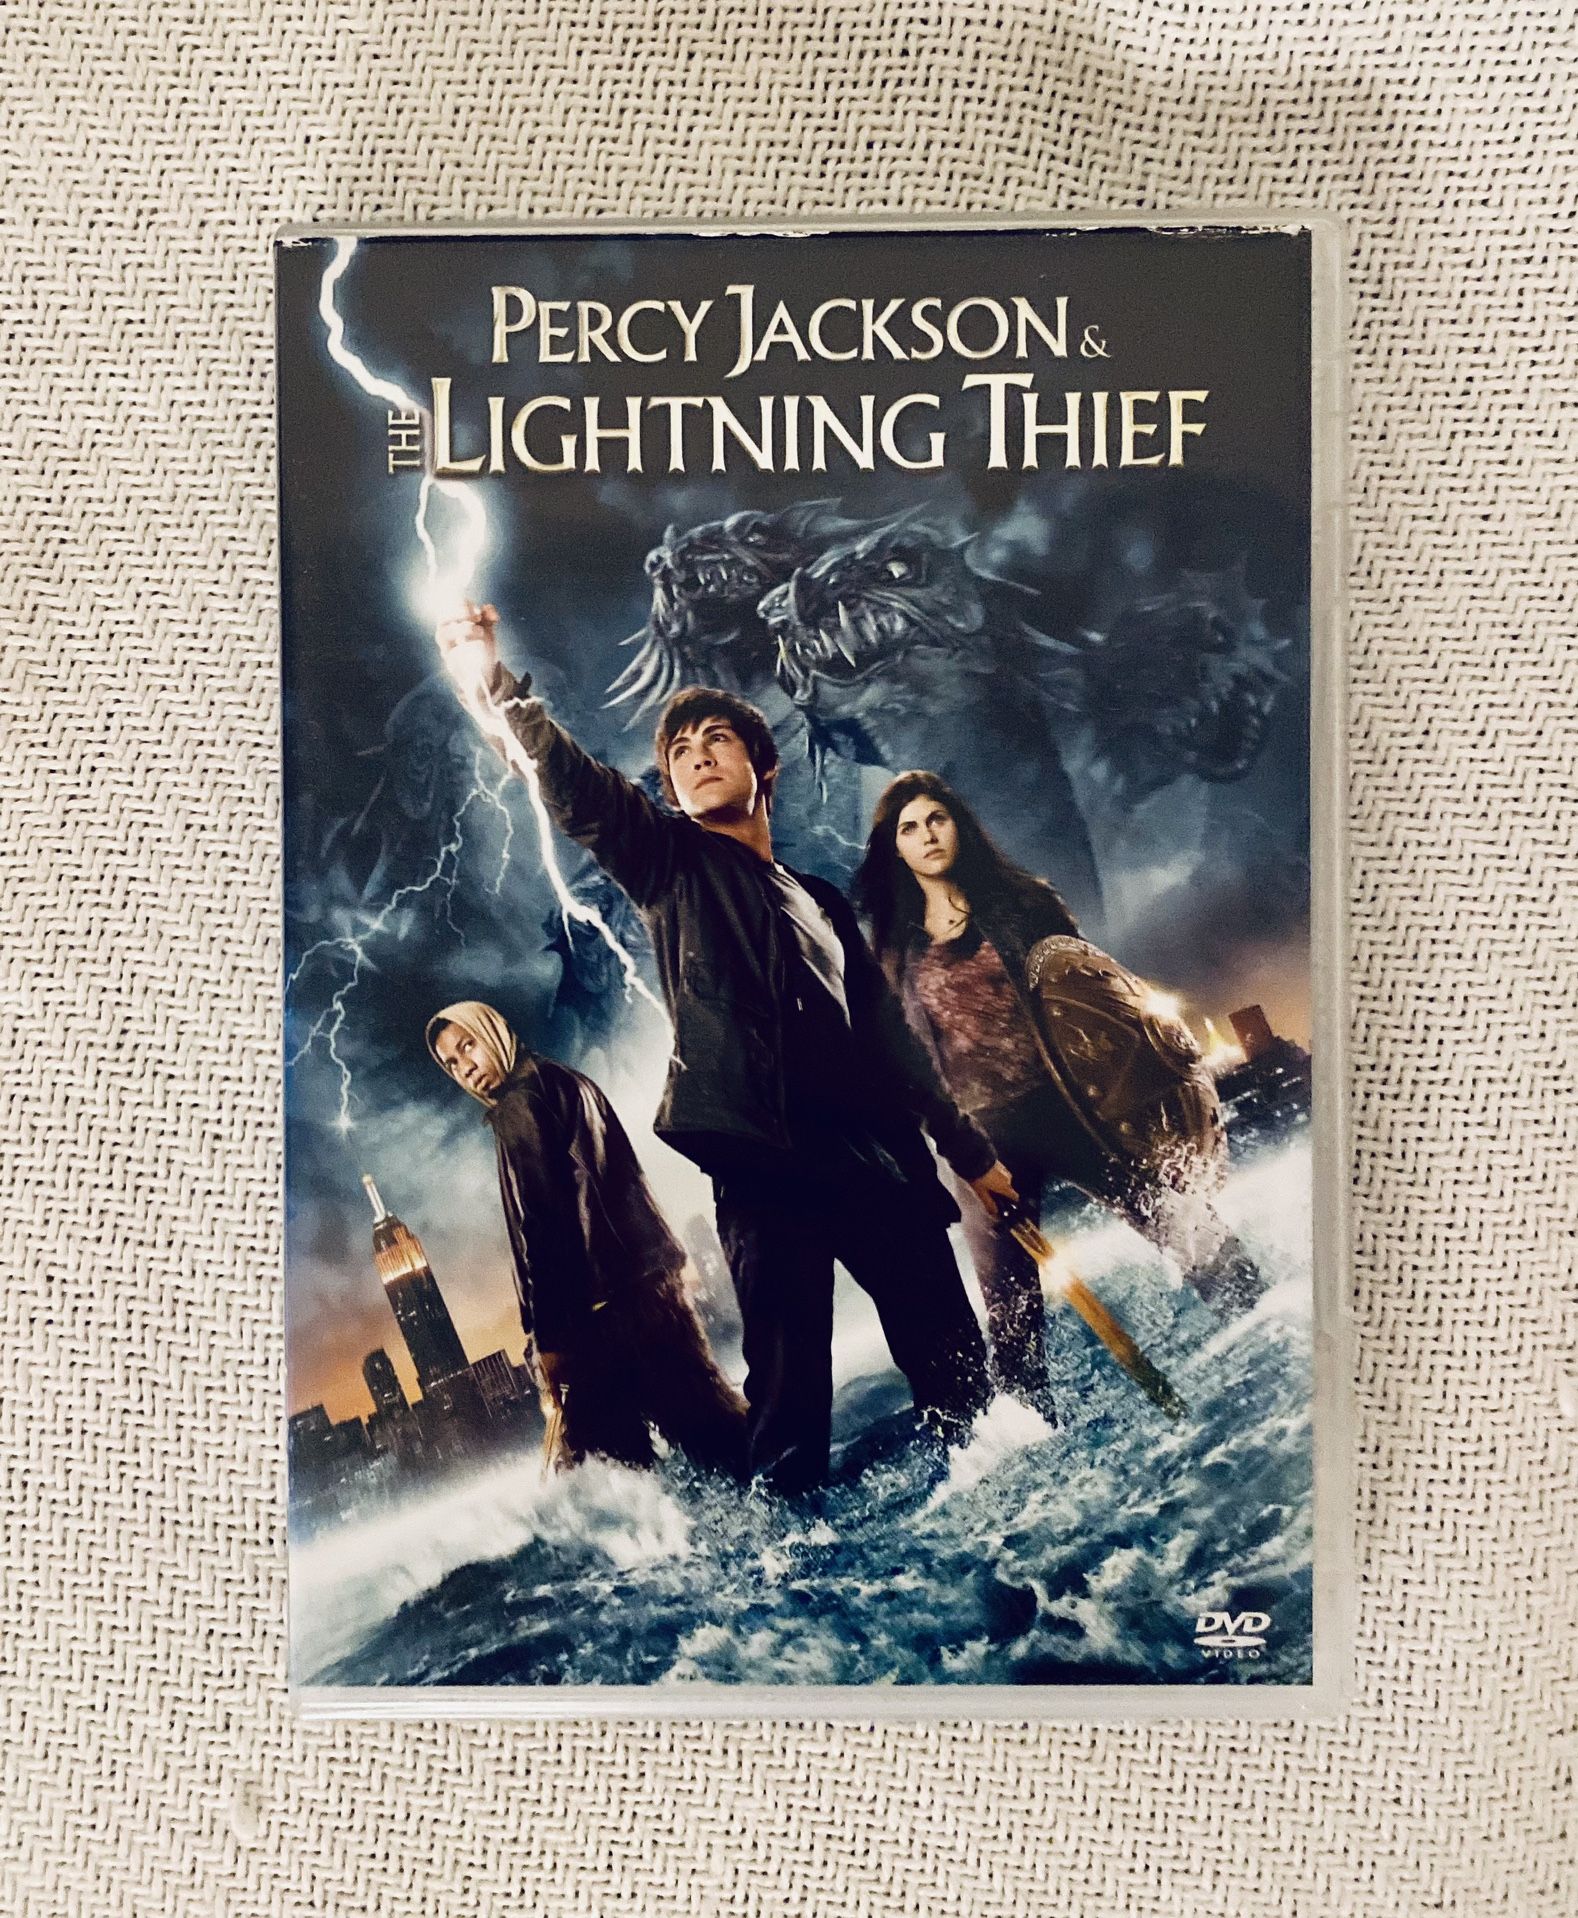 Percy Jackson & The Lighting Thief DVD